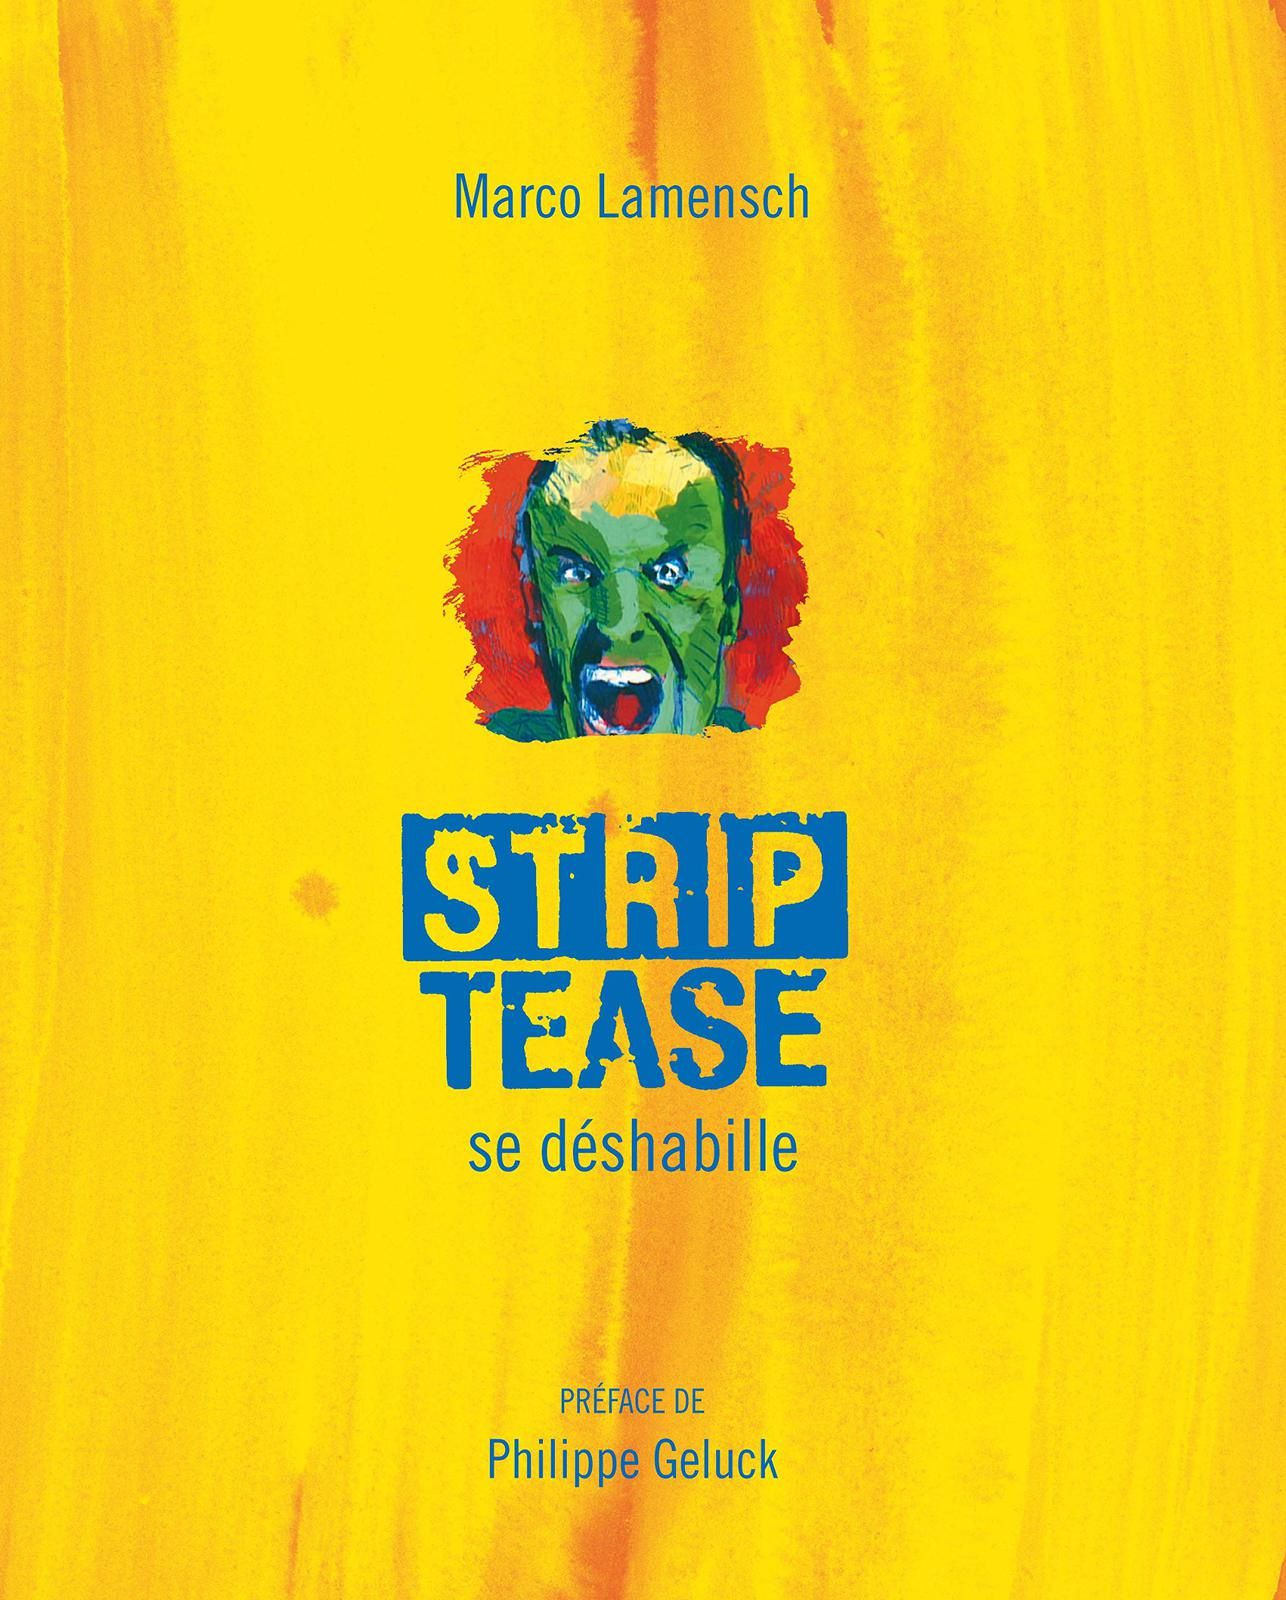 Les coulisses de l'émission culte Strip-Tease racontées dans un livre par Marco Lamensch.